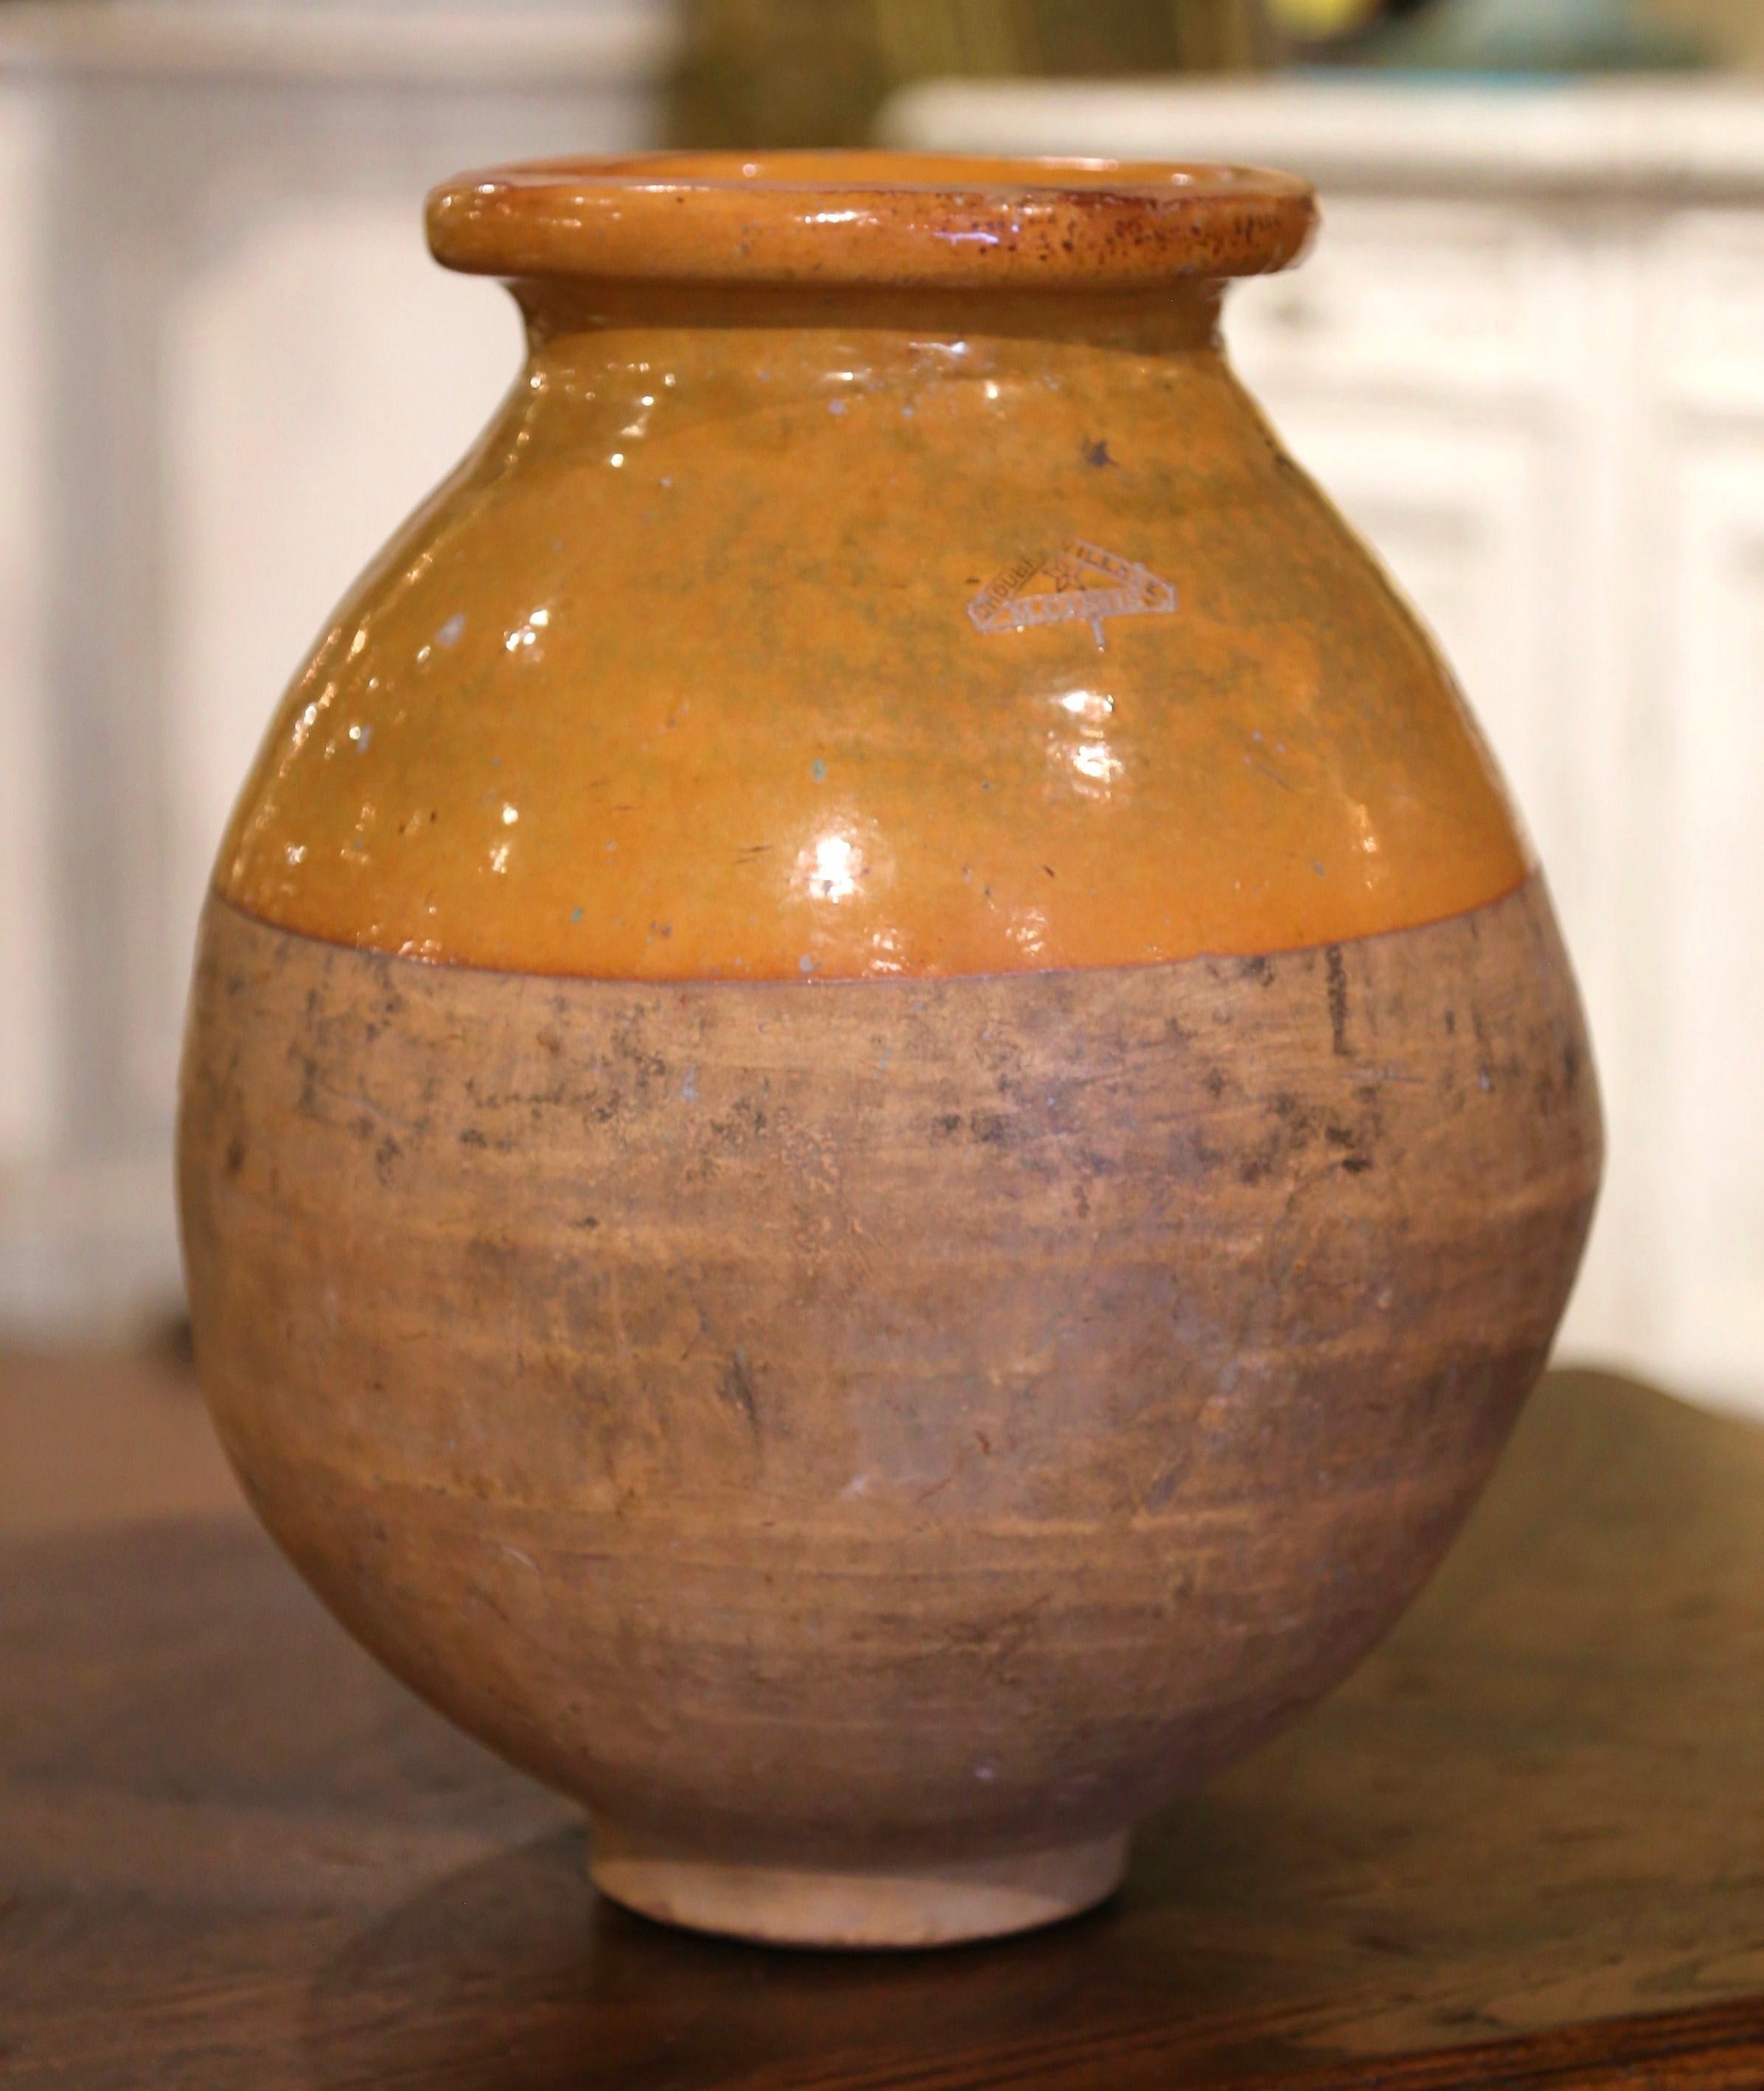 Dieses antike Olivenölgefäß aus Steingut wurde um 1880 in Südfrankreich hergestellt. Die farbneutrale Terrakotta-Vase aus blondem Ton hat eine traditionelle runde Form. Die rustikale, von der Zeit gezeichnete Kanne hat eine gelbe Glasur am Hals und